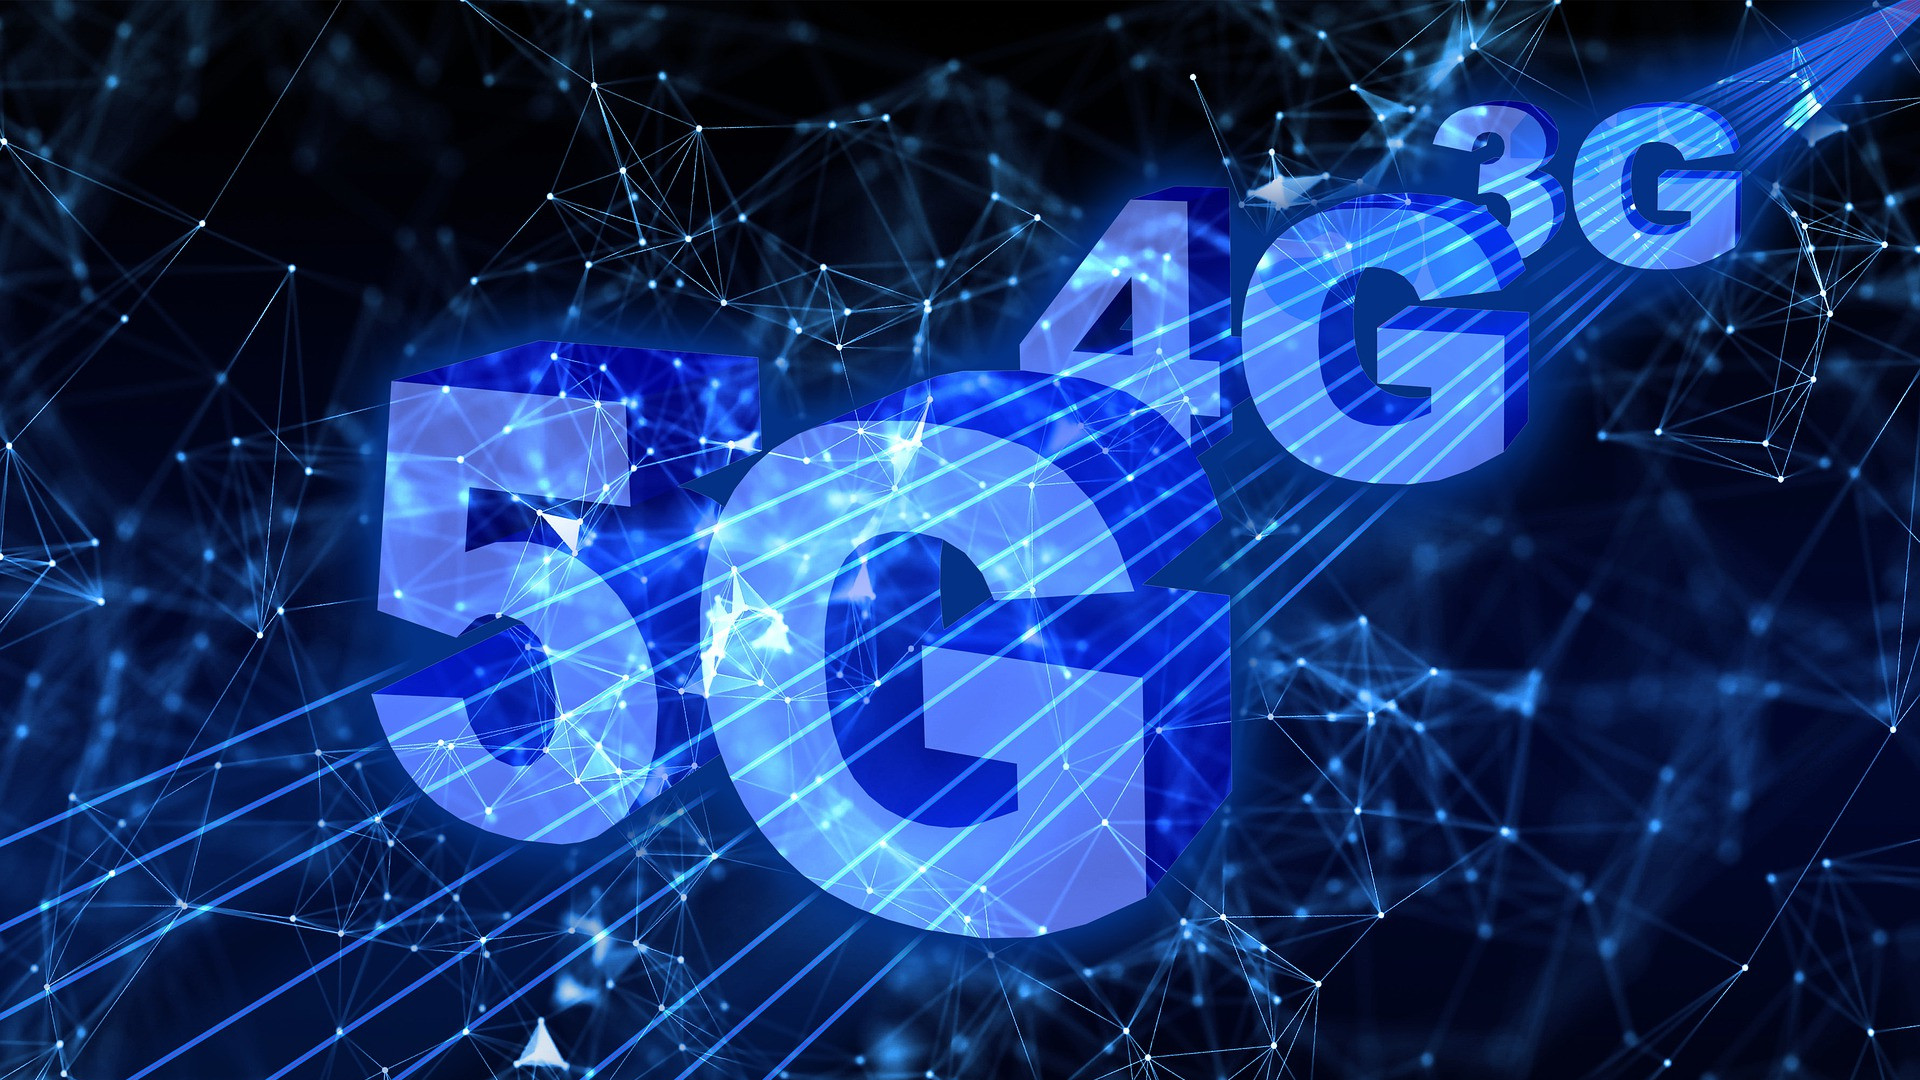 O 5G no Brasil: conheça alguns dispositivos liberados pela Anatel e curiosidades da conexão